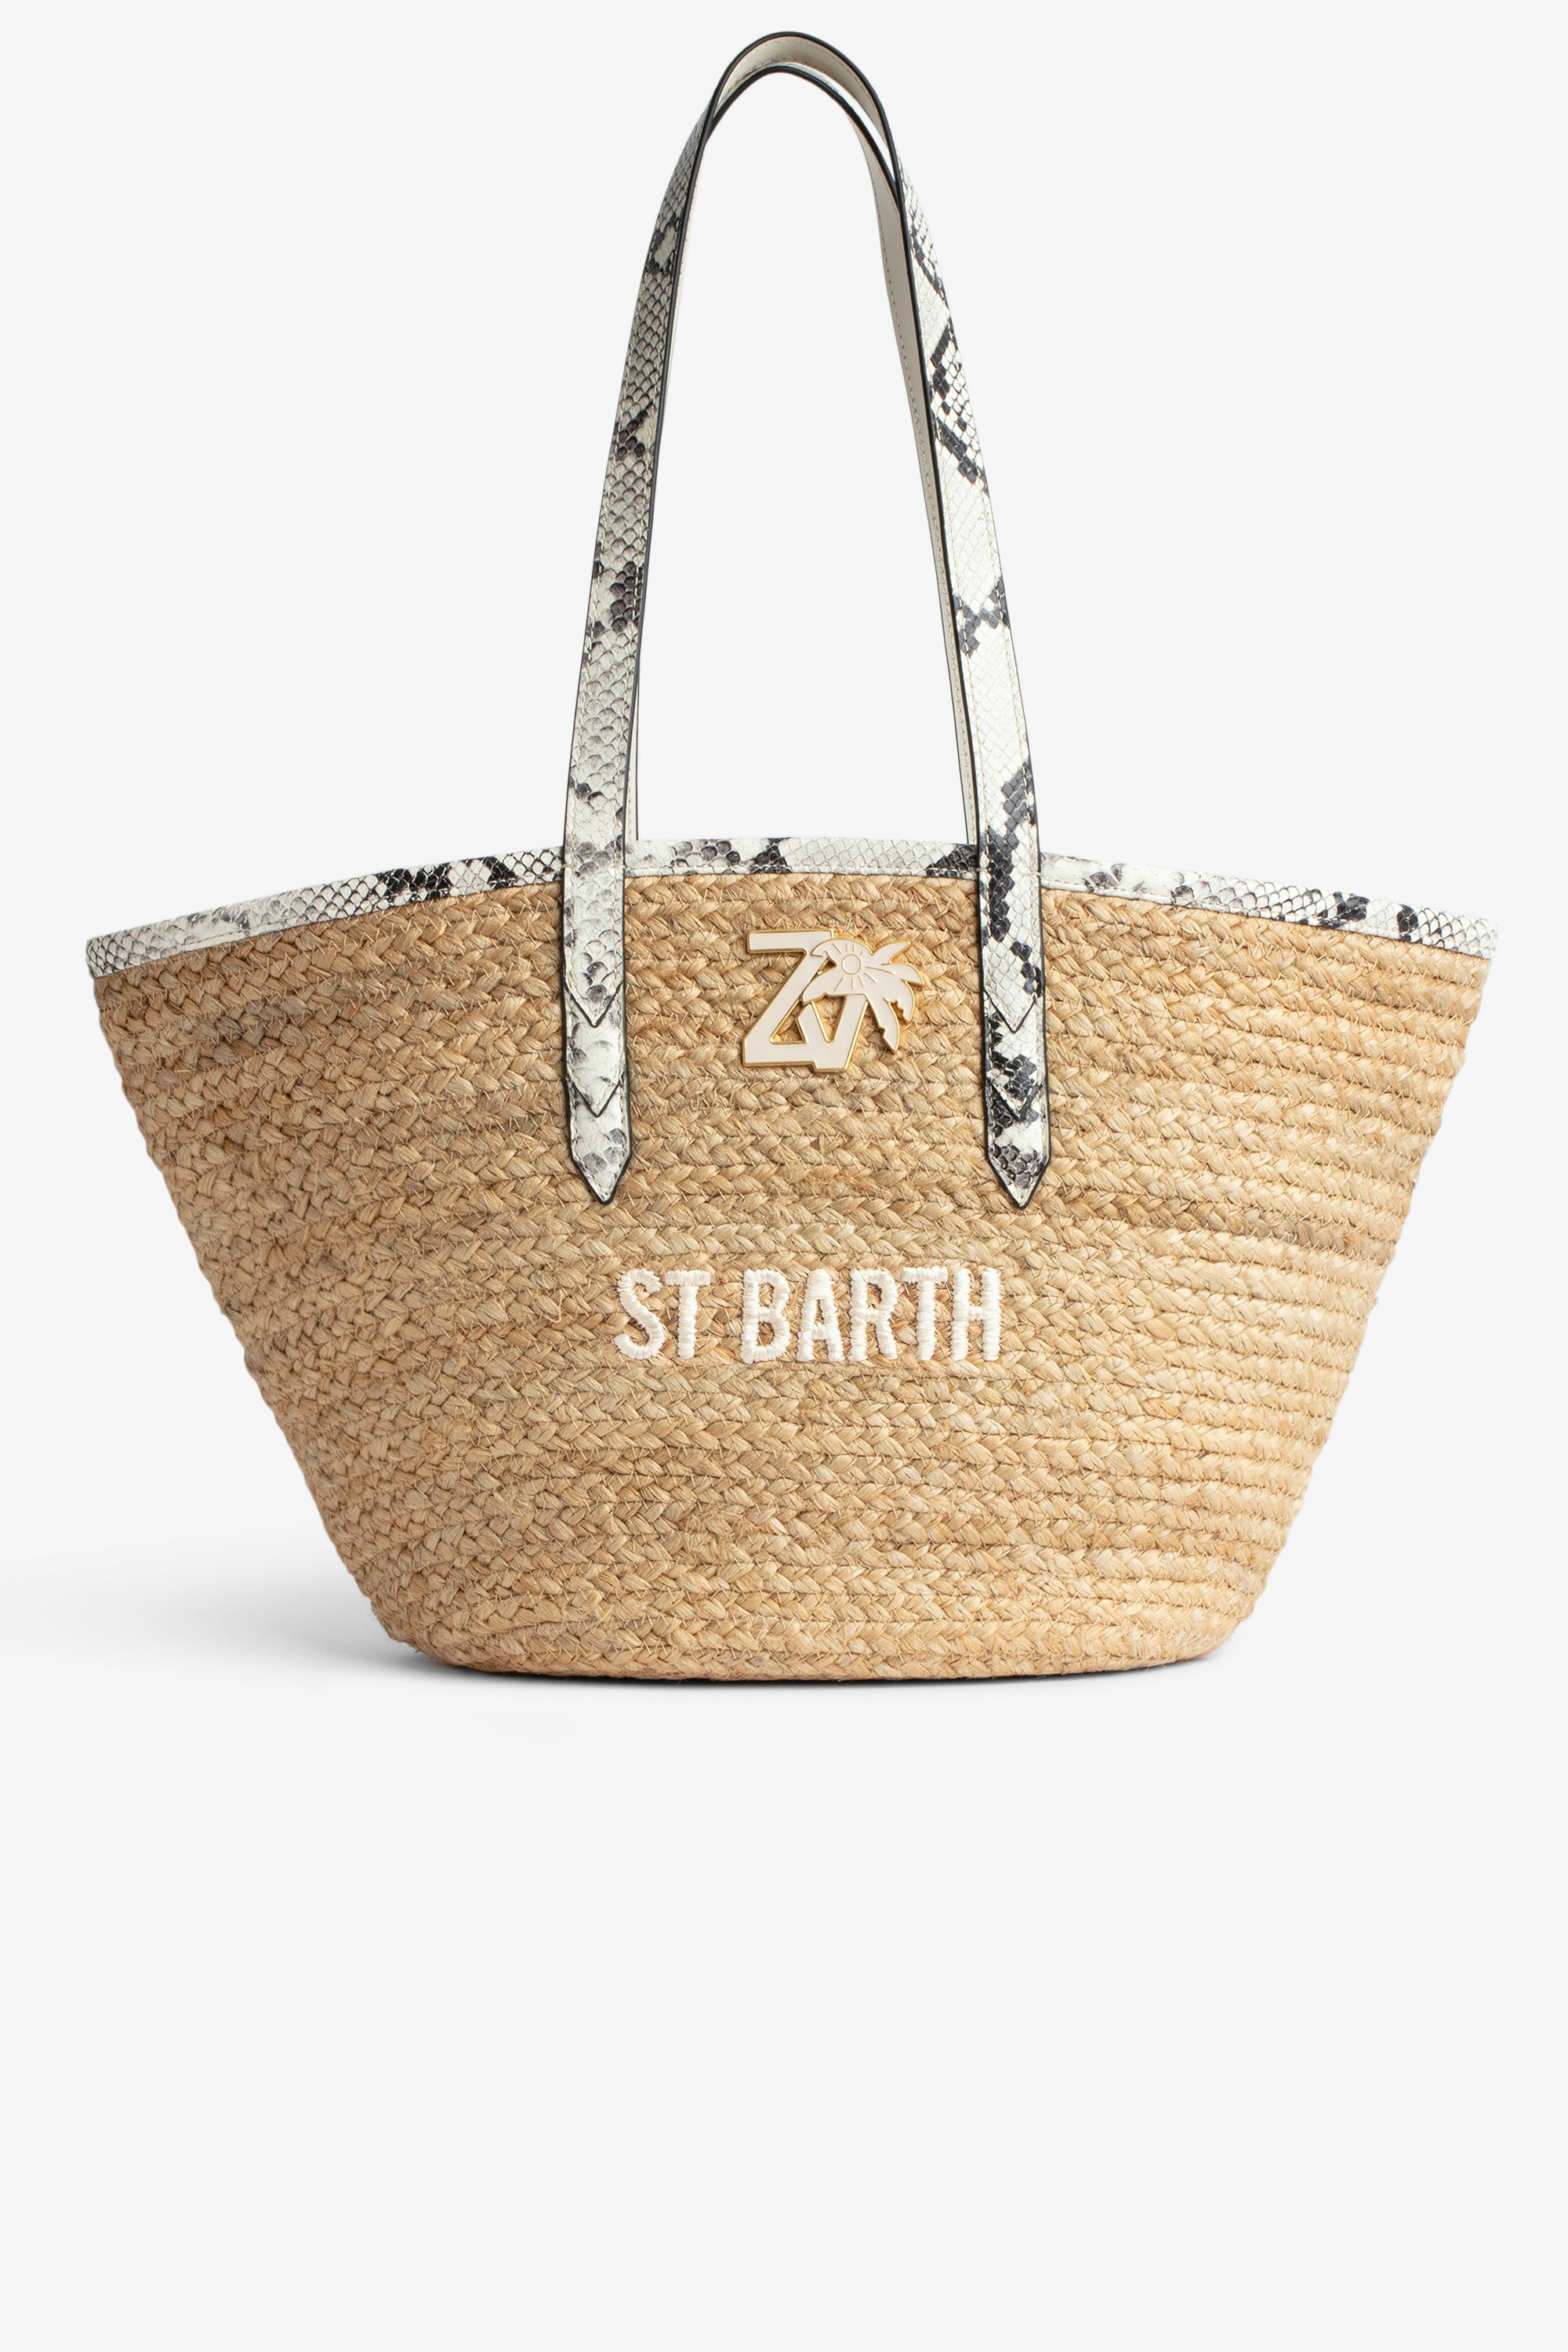 Borsa Le Beach Bag Borsa in paglia con manici in pelle ecru effetto pitone, con ricamo "St Barth" e impreziosita da un charm ZV - Donna